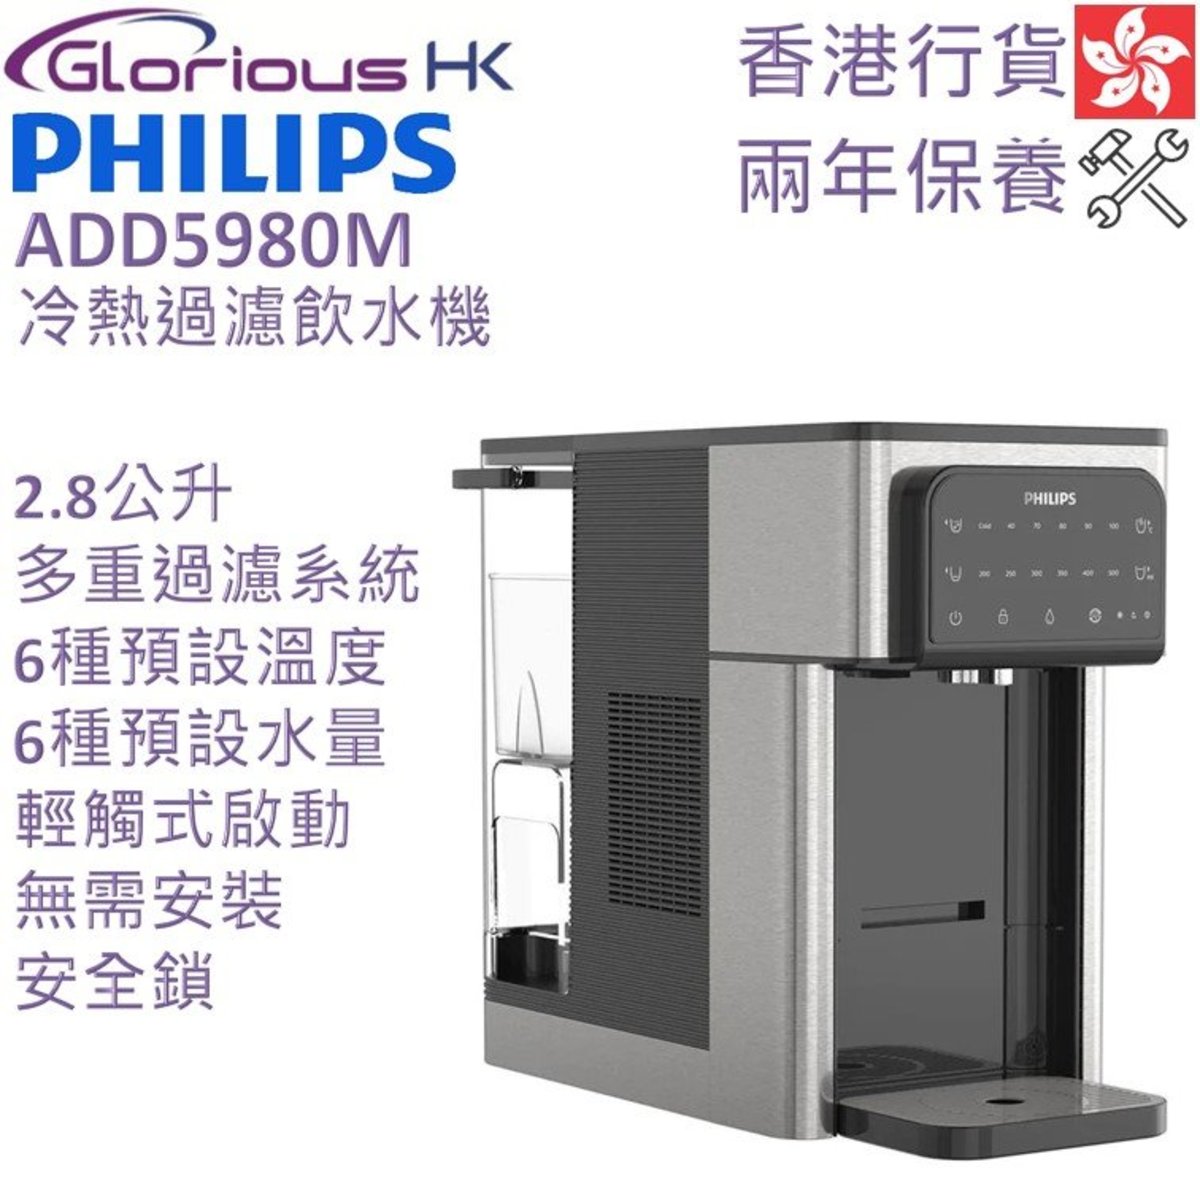 ADD5980M 2.8L 冷熱過濾飲水機 香港行貨